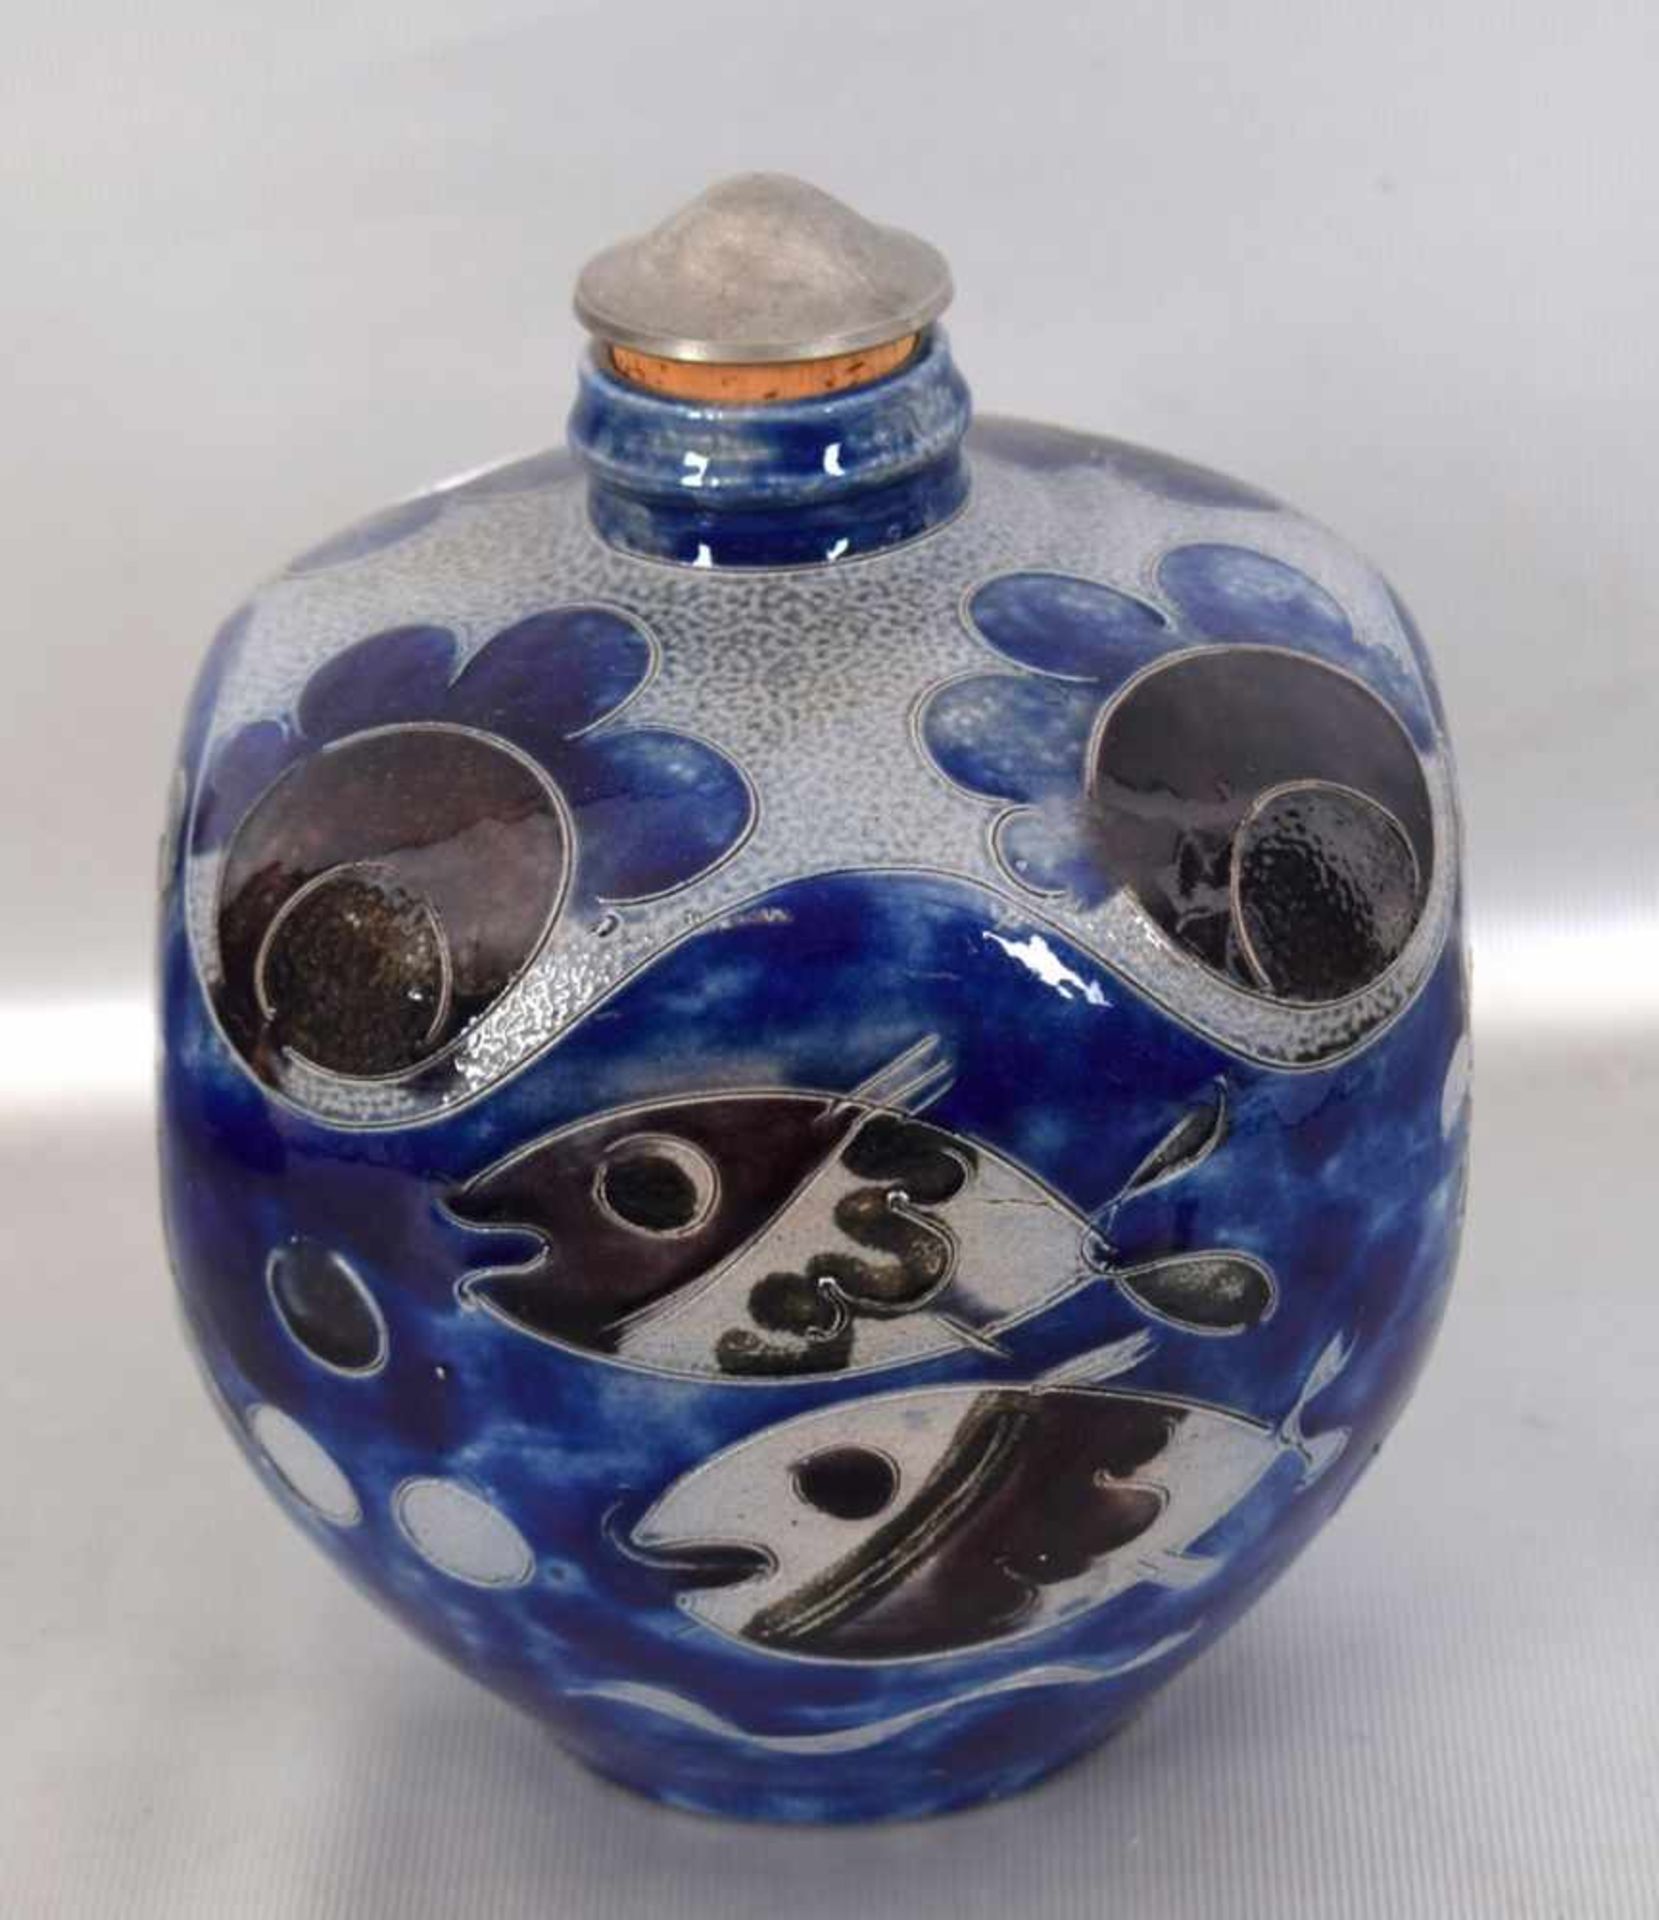 Schnapsflasche grau glasiert, Wandung mit Tiermotiven geritzt, blau und braun bemalt,